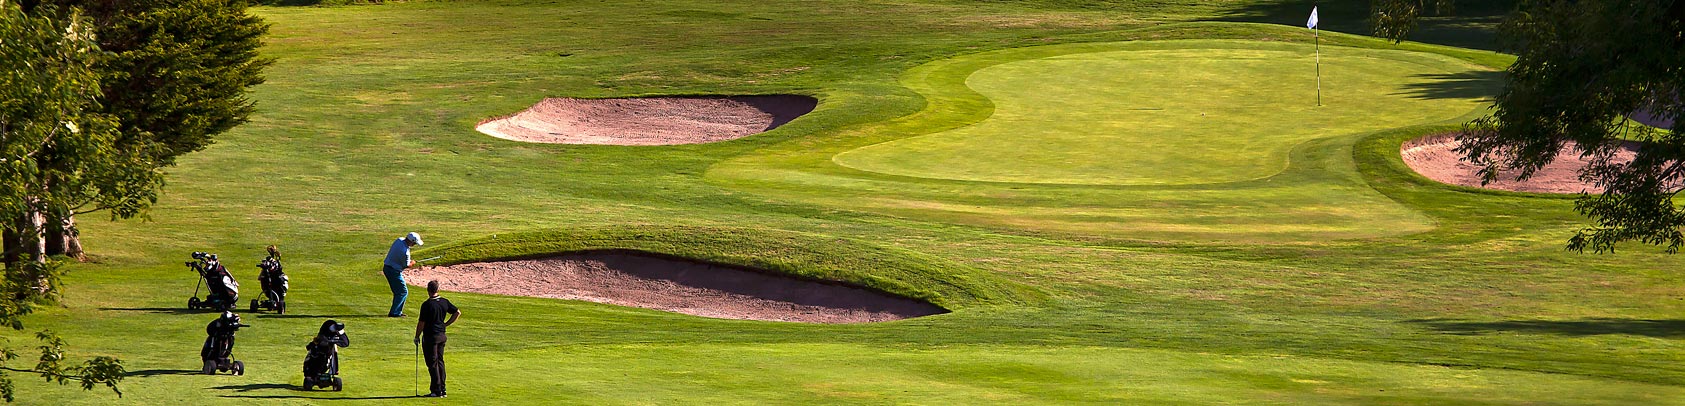 Golf Club in Wales, Members Golf Wales